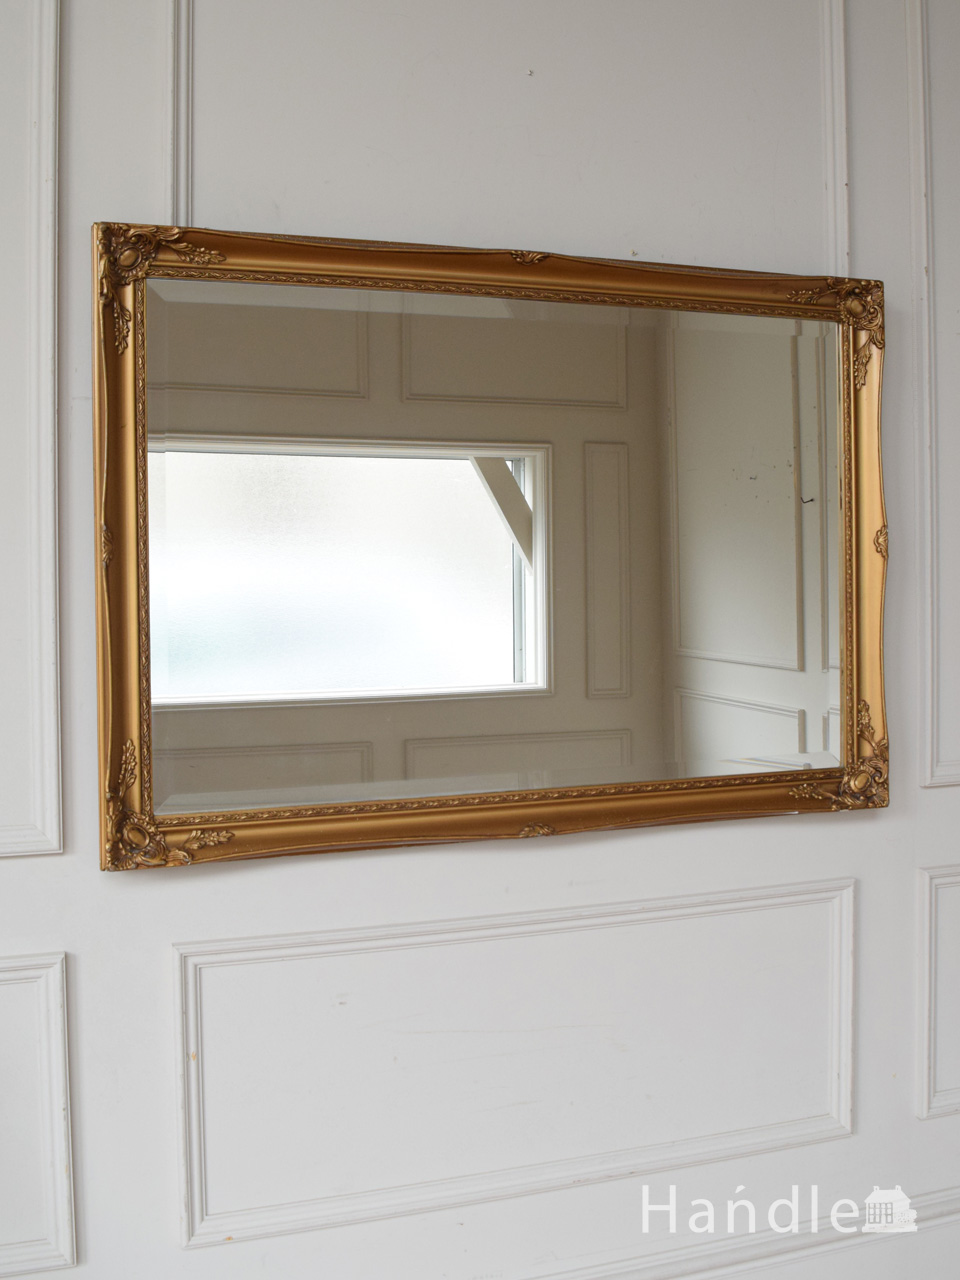 アンティークのおしゃれな鏡 イギリスで見つけたゴールドの壁掛け鏡 K 4570 Z アンティーク雑貨